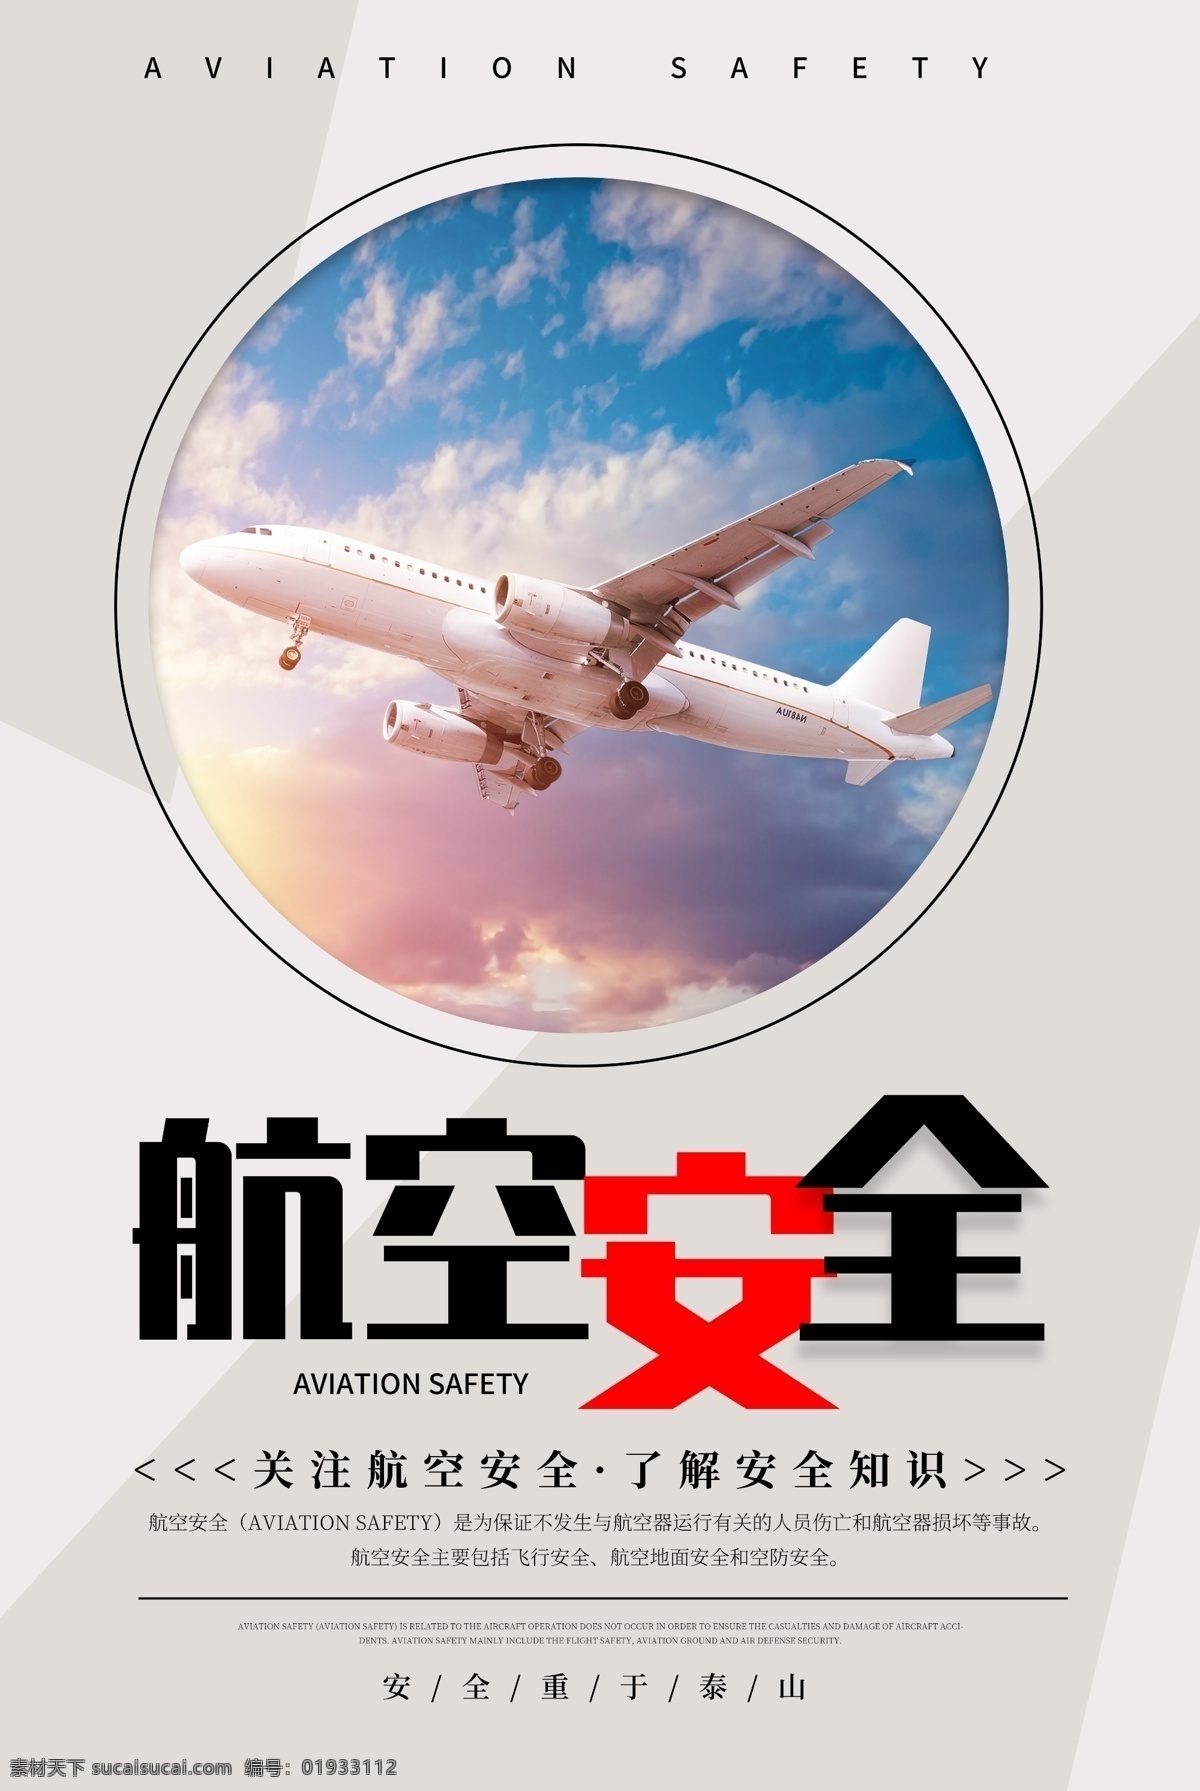 简约 航空 安全 公益 宣传海报 航空安全 飞机 安全常识 安全知识 关注航空安全 飞机安全 飞行安全 空中安全 宣传